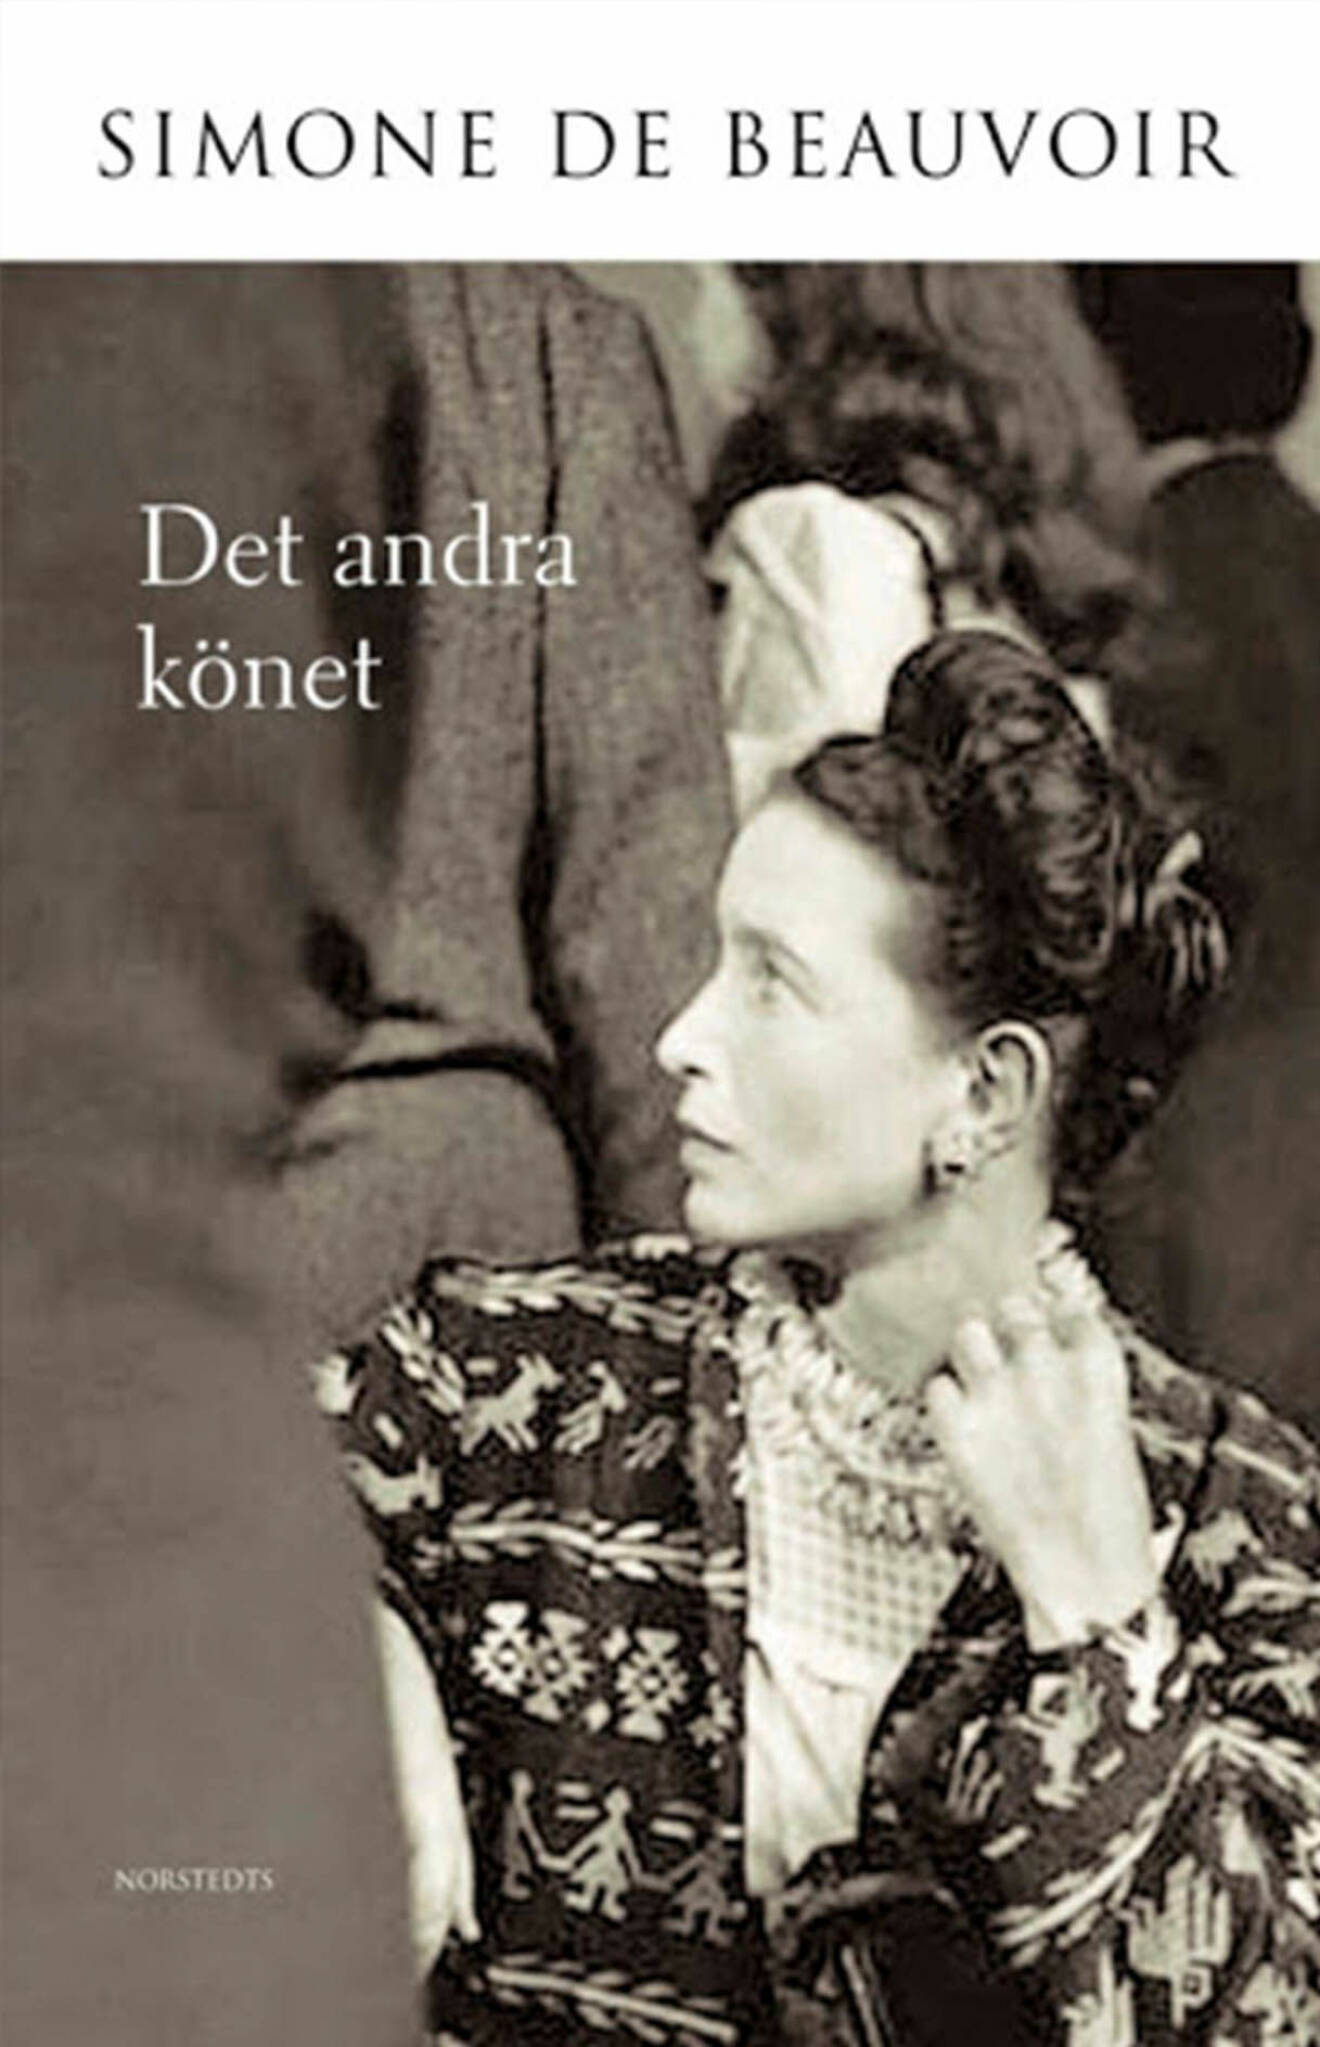 Bokomslag till Det andra könet- Bild på Simone De Beauvoir.